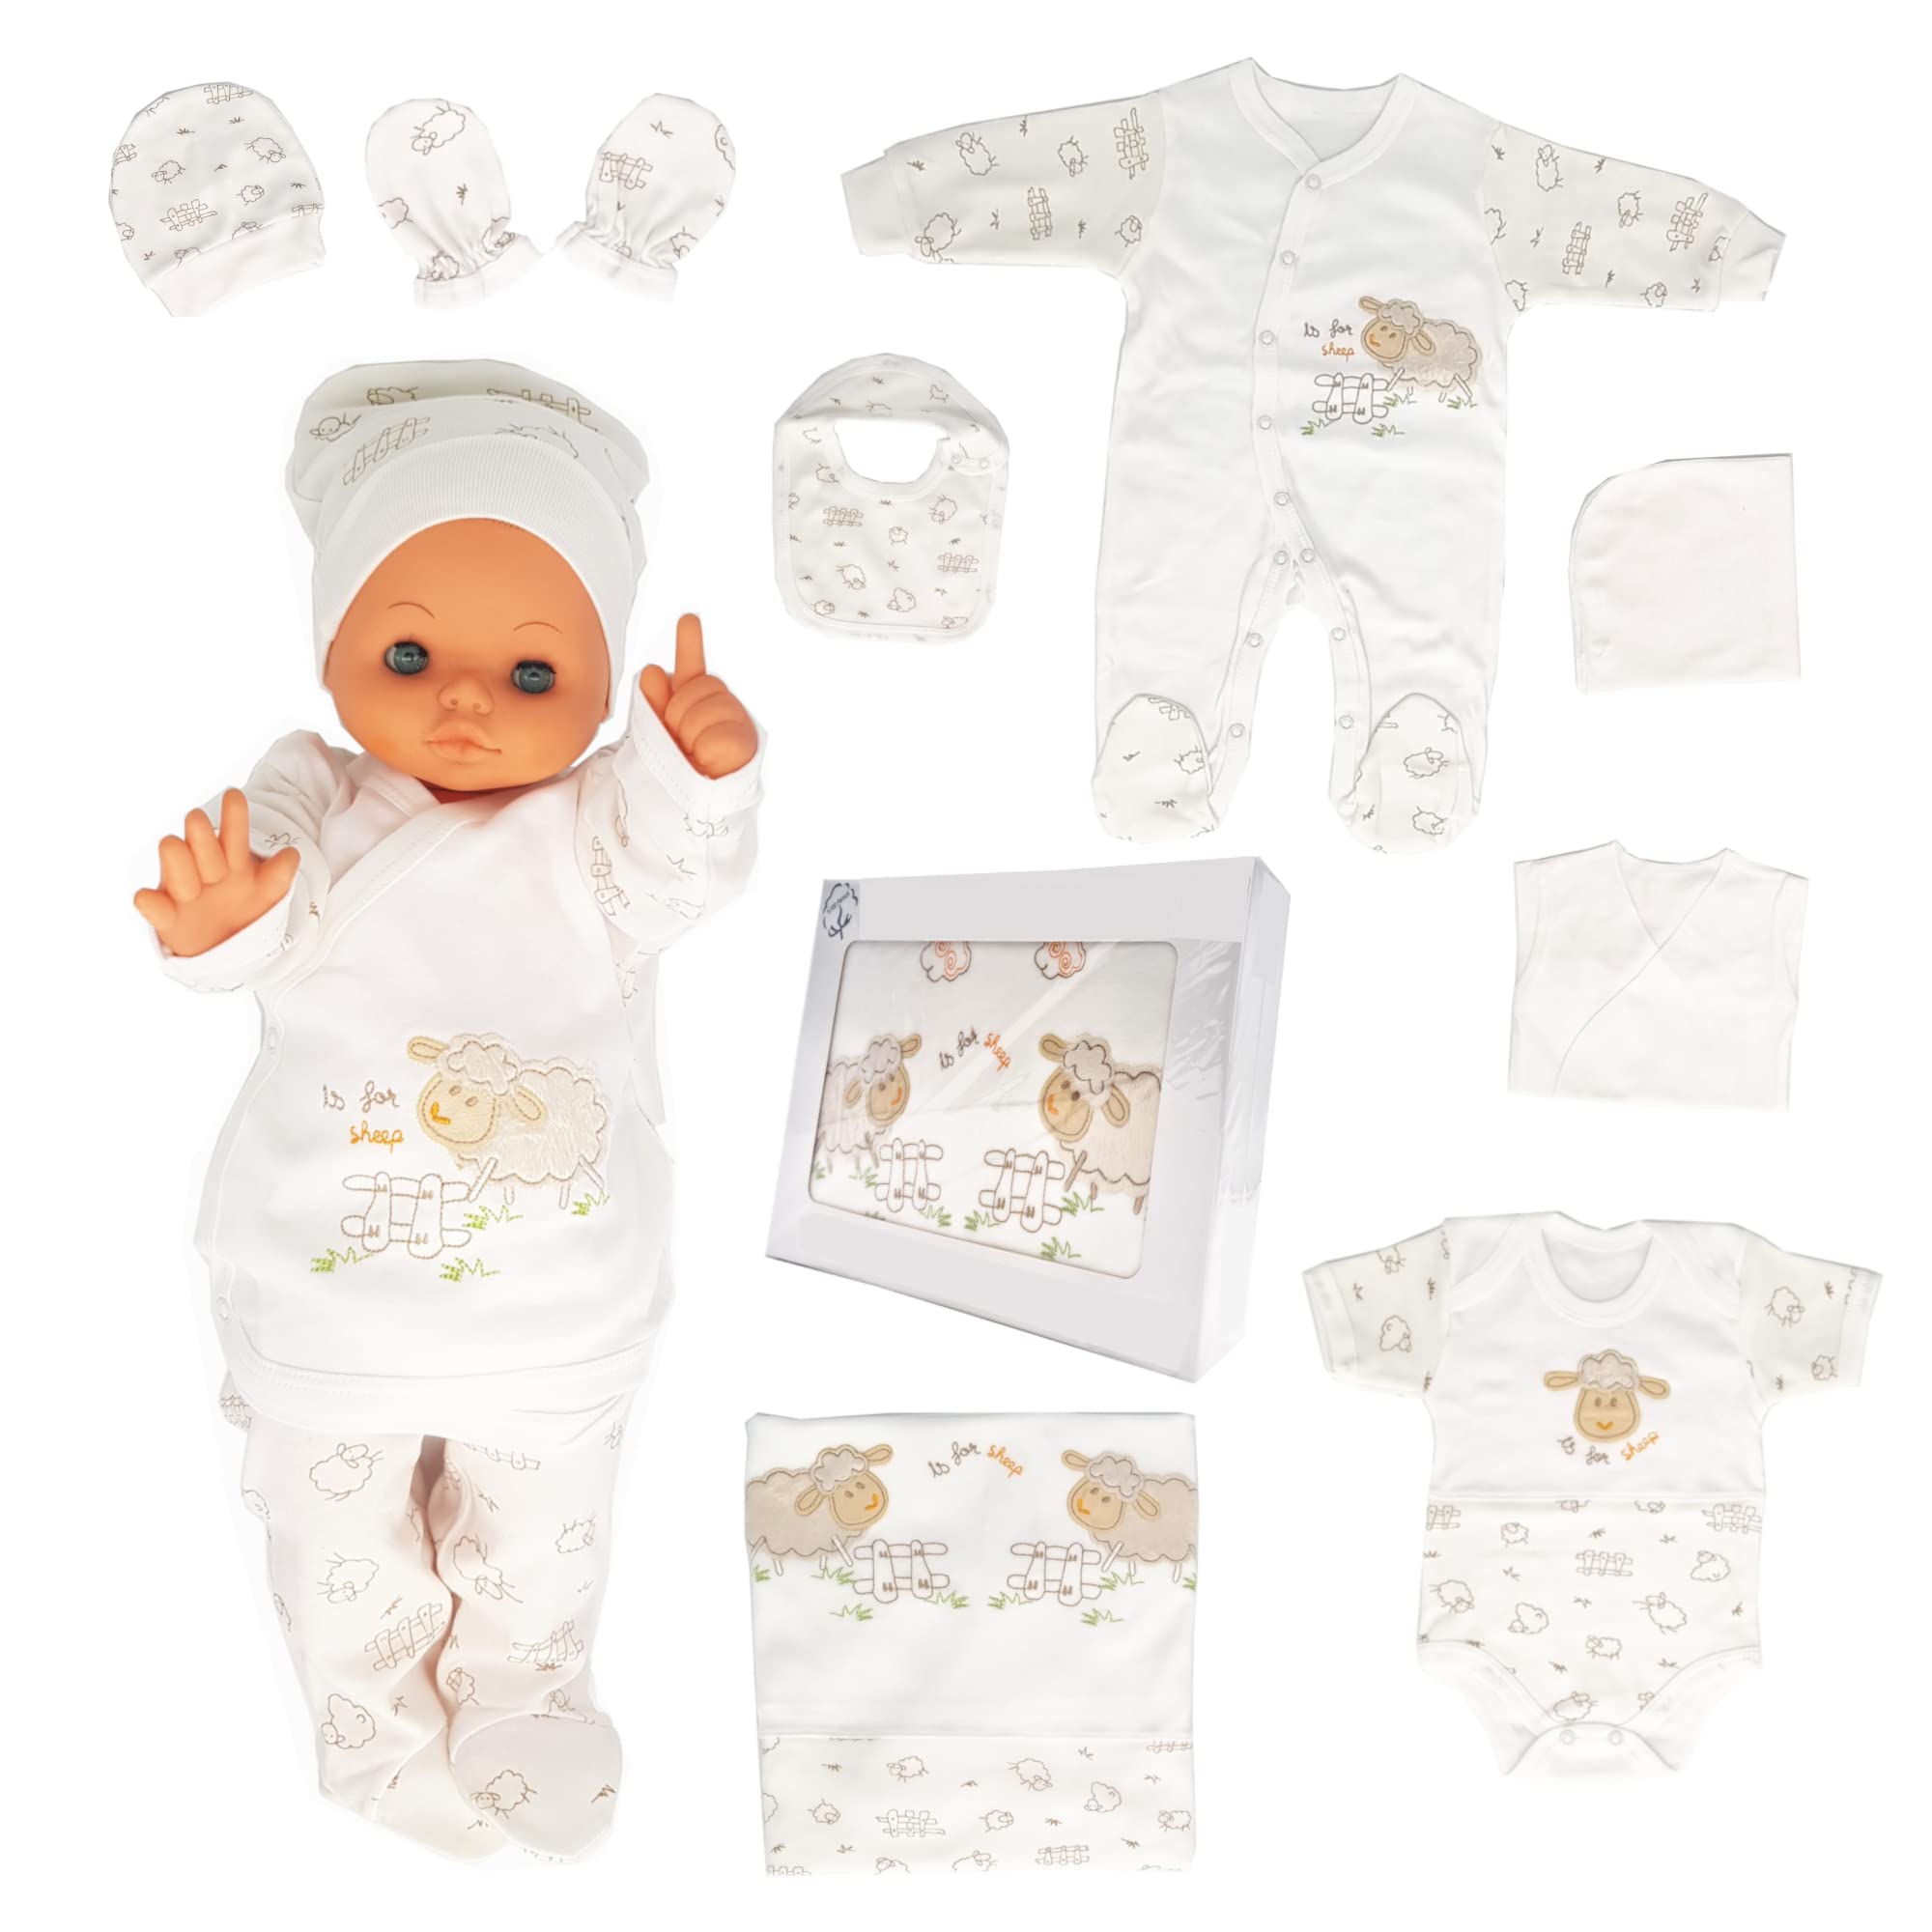 Blue Eyes Neugeborenen Baby Krankenhaus Geschenk Set 100% natürliche Baumwolle Erstausstattung Erstlingsausstattung Ausstattung Unisex Kleidung Geschenkset für Babys 0-4 Monate 10 teilig (Lamm-10)